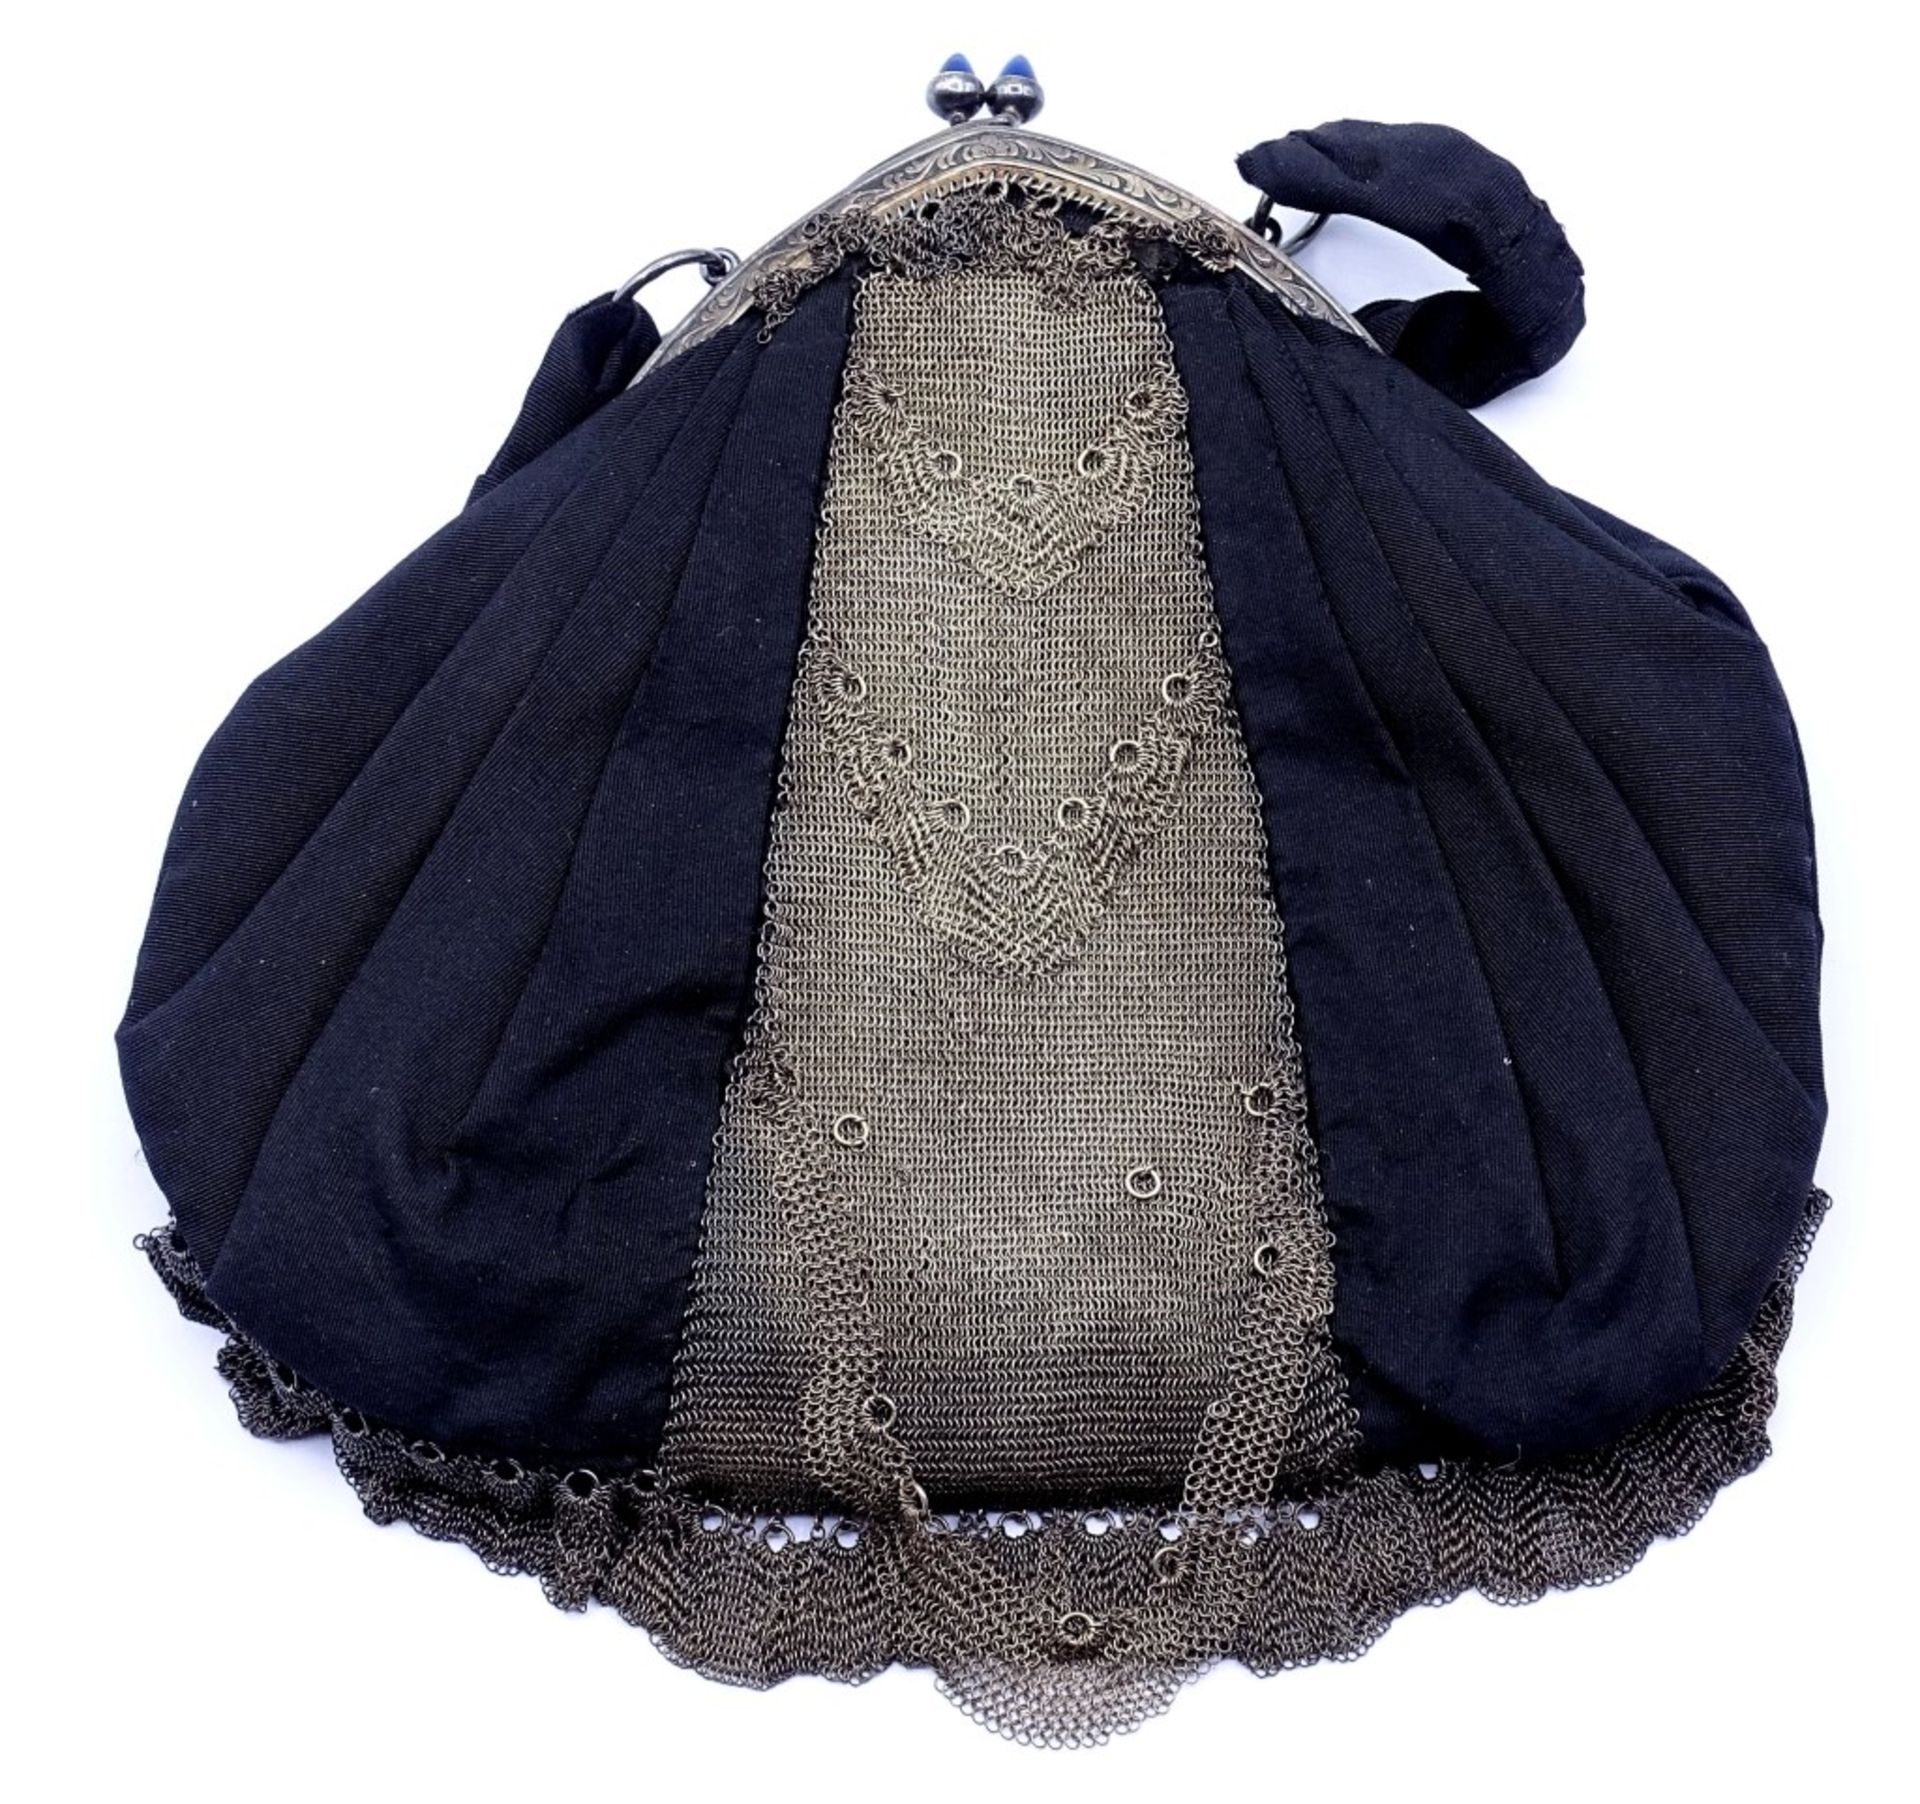 Damen Tasche um 1900 mit Silber Montur 800/000,sog.Kettentasche,Alters-u. Gebrauchsspuren,L-